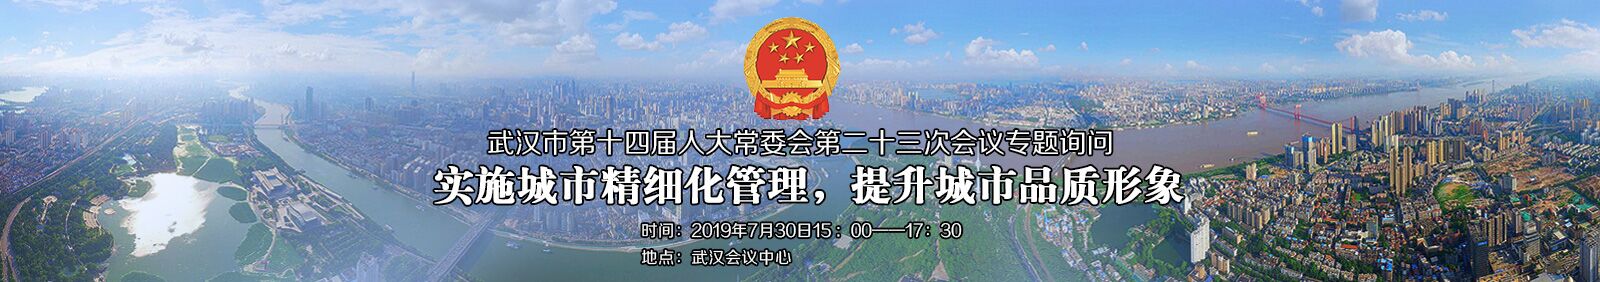 武汉市第十四届人大常委会第二十三次会议专题询问“实施城市精细化管理，提升城市品质形象”于2019年7月30日15:00-17:30举行。